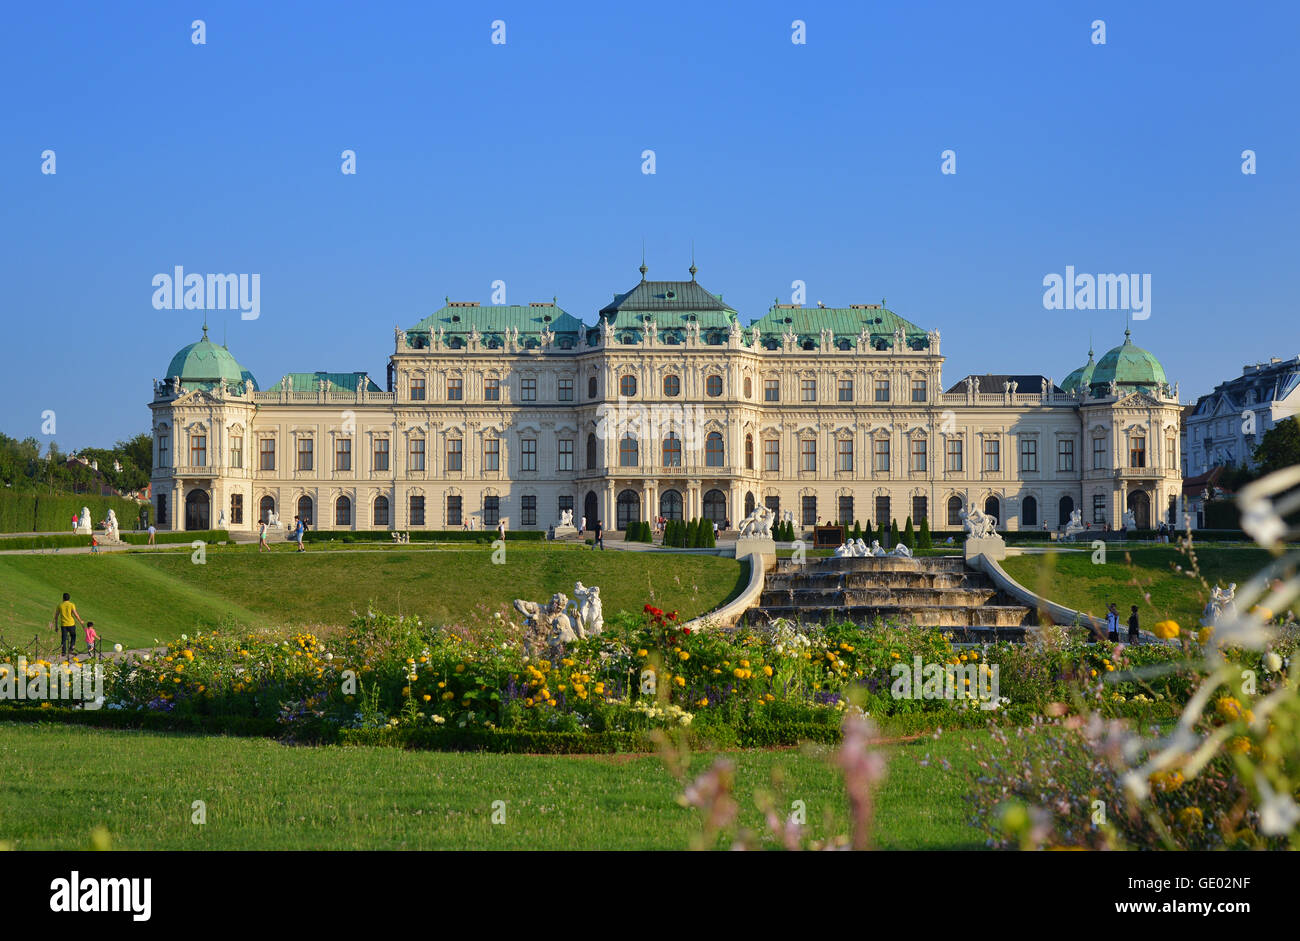 Il palazzo barocco " Il Belvedere Superiore" a Vienna è parte della residenza estiva del principe Eugenio di Savoia. Foto Stock